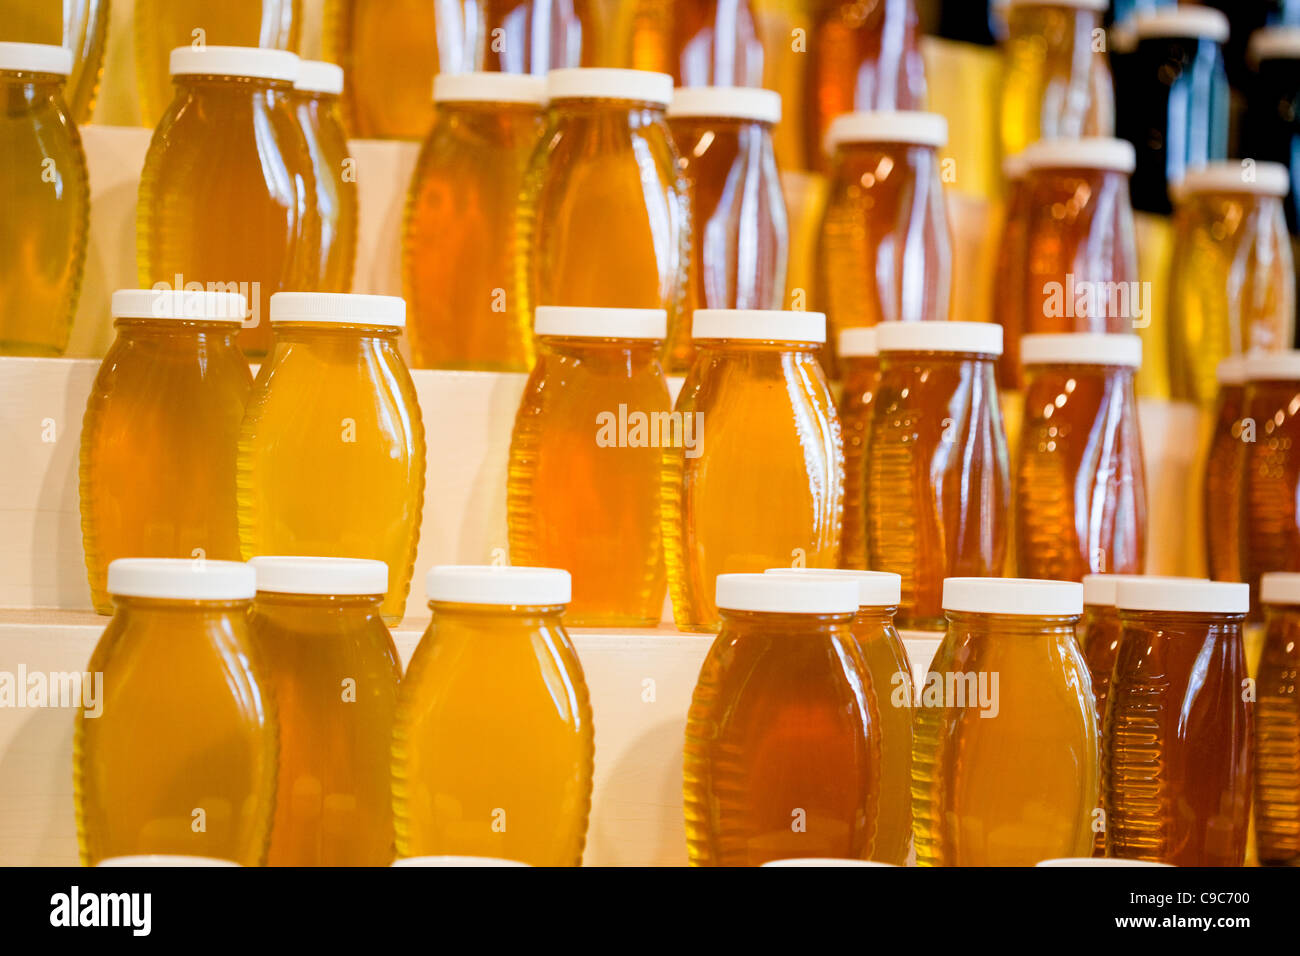 Honig, Honig Jar, reinem Honig, süß, natürlichem Honig, Honigbienen, Nuancen von Honig, Noten von Honig Stockfoto